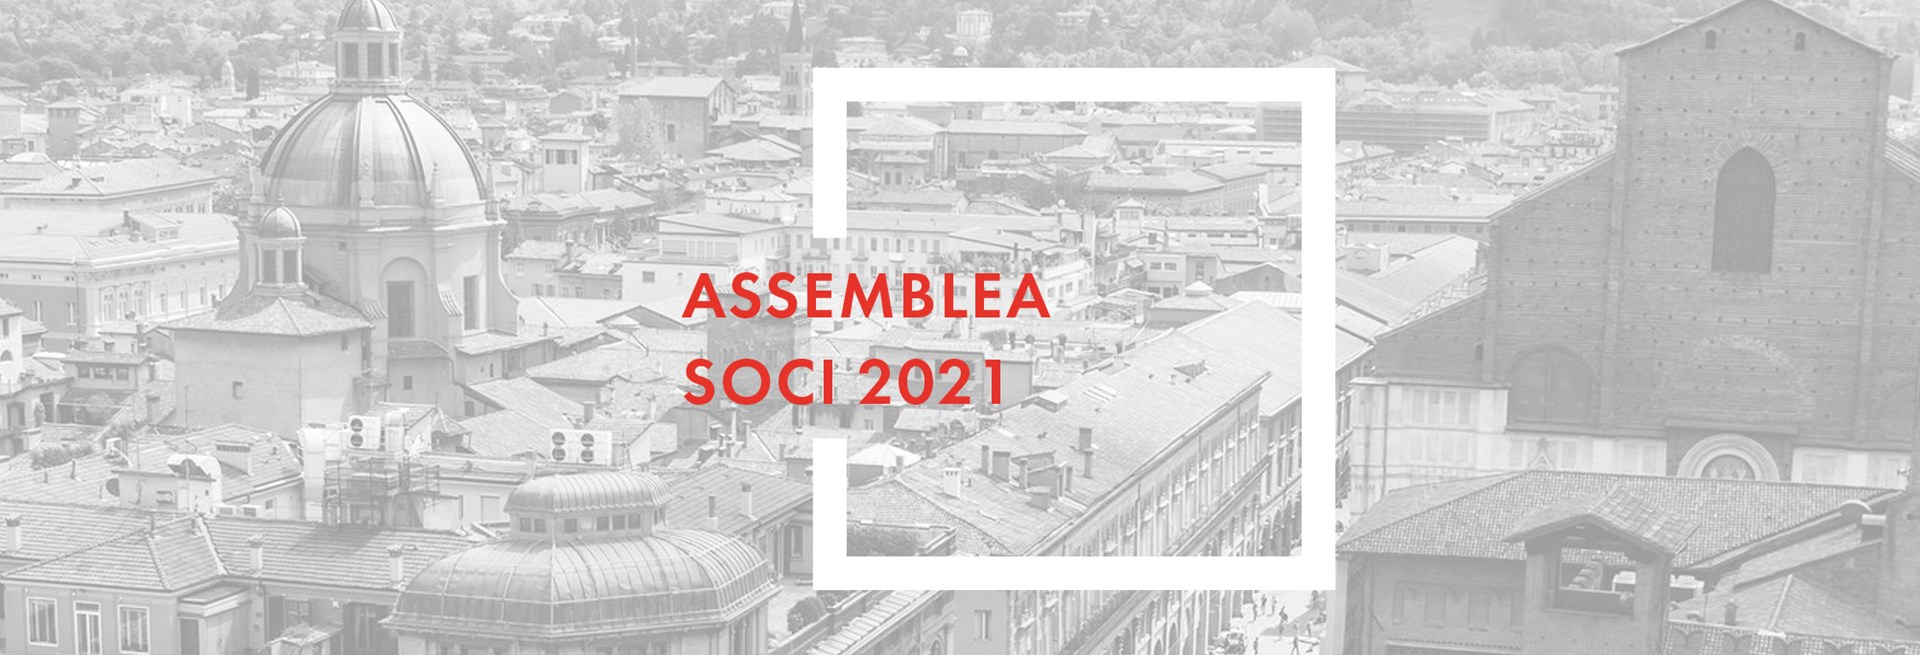 Banner Assemblea Soci 2021